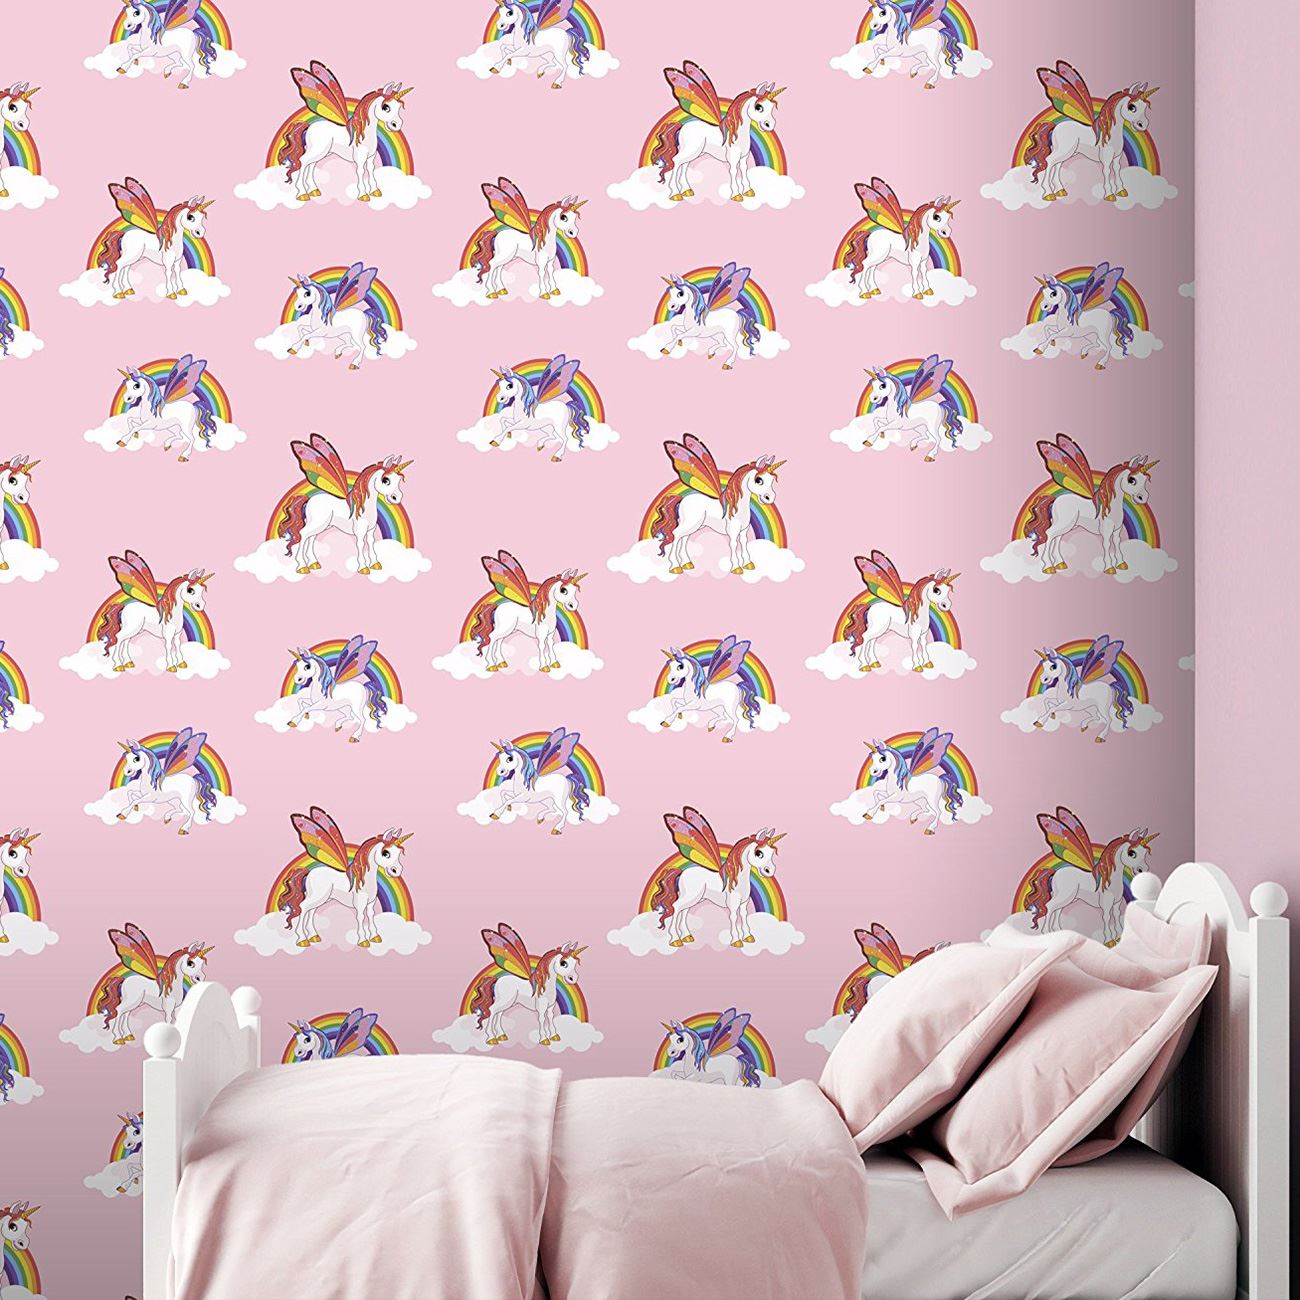 キッズピンクの壁紙,壁紙,ウォールステッカー,ピンク,壁,ルーム